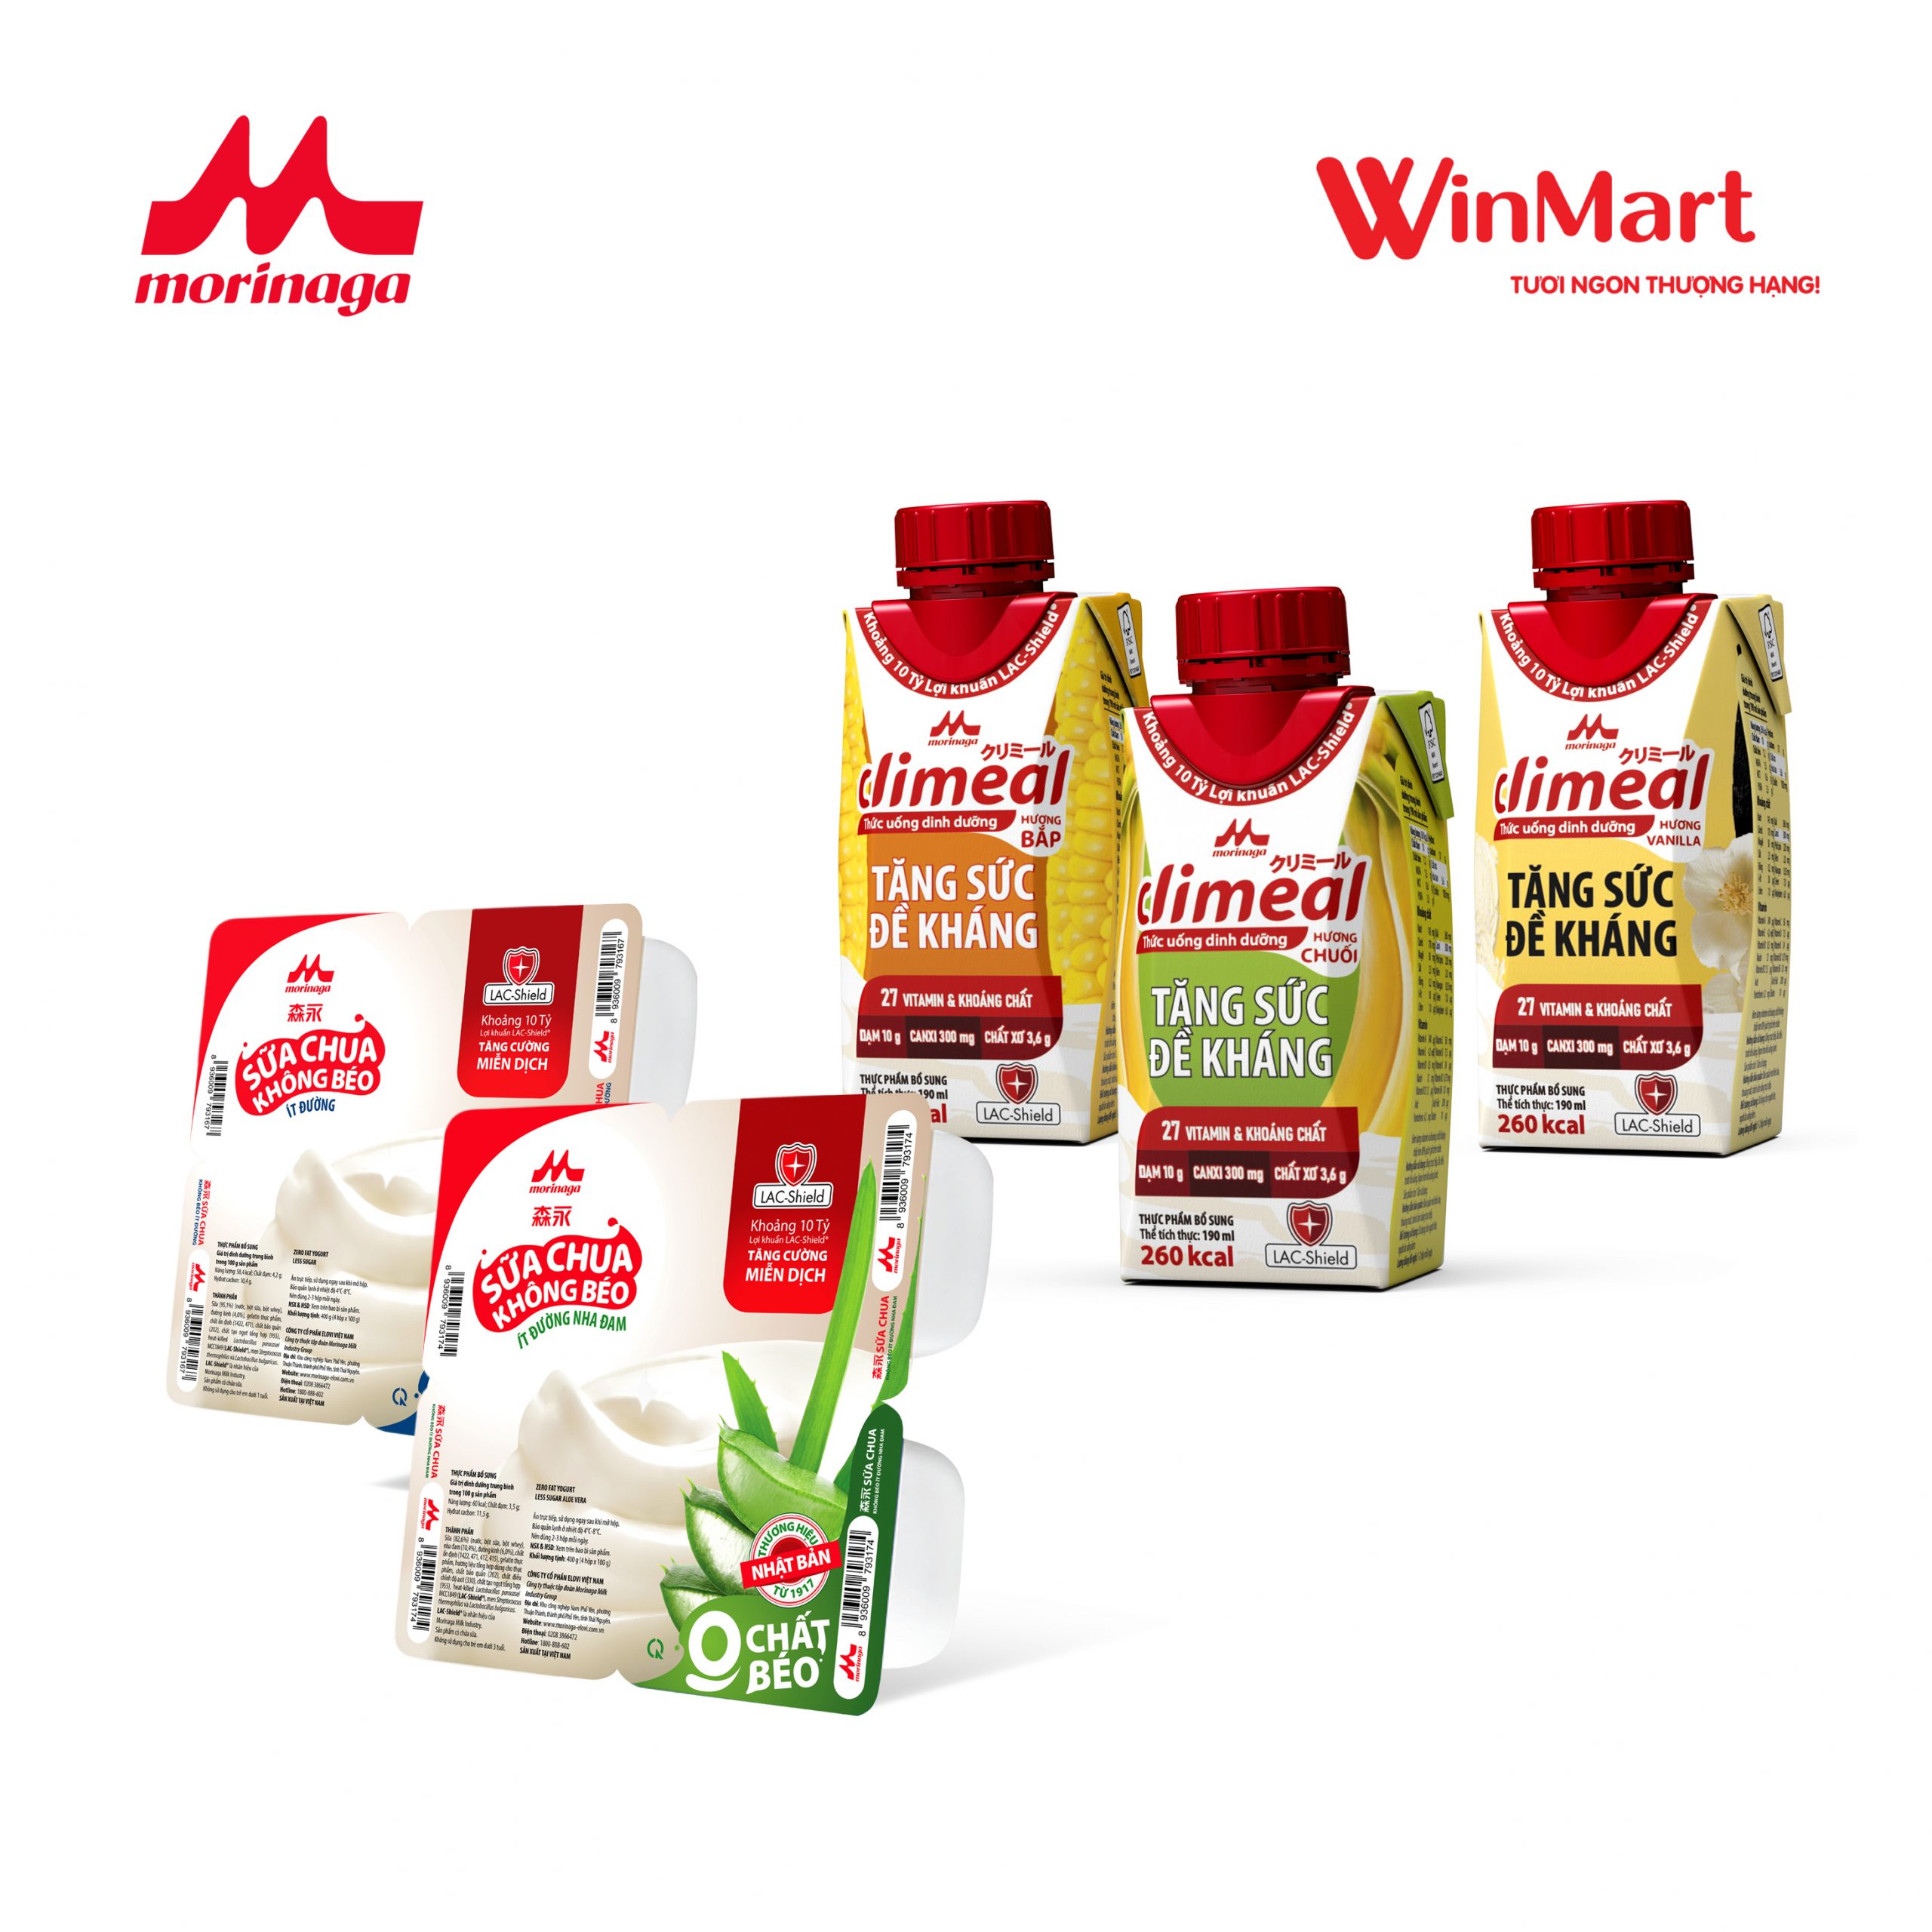 Morinaga Milk Industry Group (ELOVI Việt Nam) Giới thiệu 2 Sản phẩm Mới tại Hệ thống WinMart/WinMart+/WIN